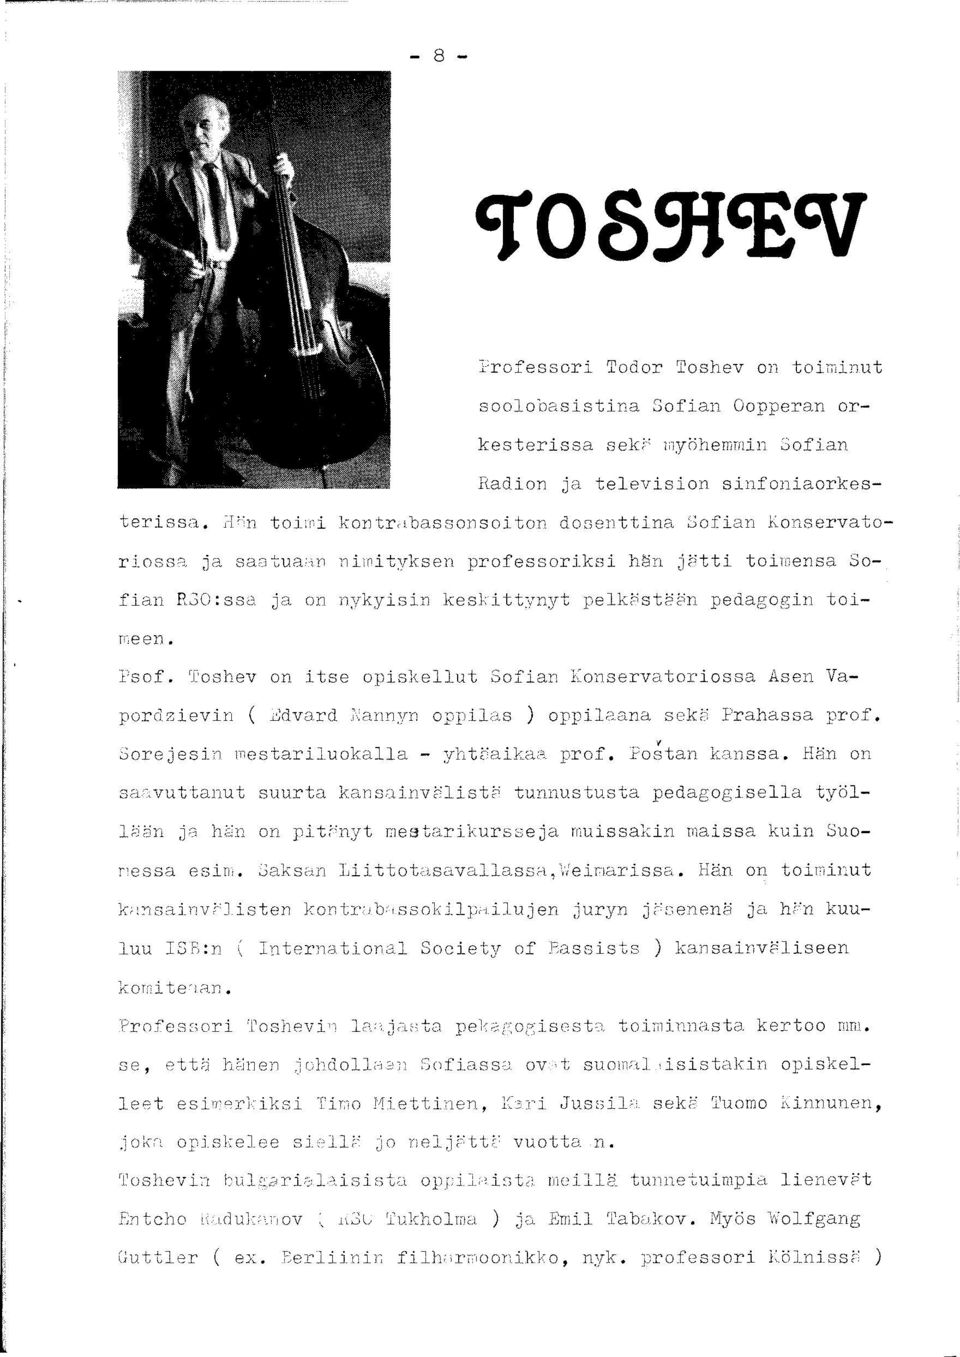 Toshev on itse opiskellut Sofian Konservatoriossa Asen Vapordzievin ( Edvard Nannyn oppilas ) oppilaana sekä Prahassa prof. Sorejesin mestariluokalla - yhtäaikaa prof. Poštan kanssa.